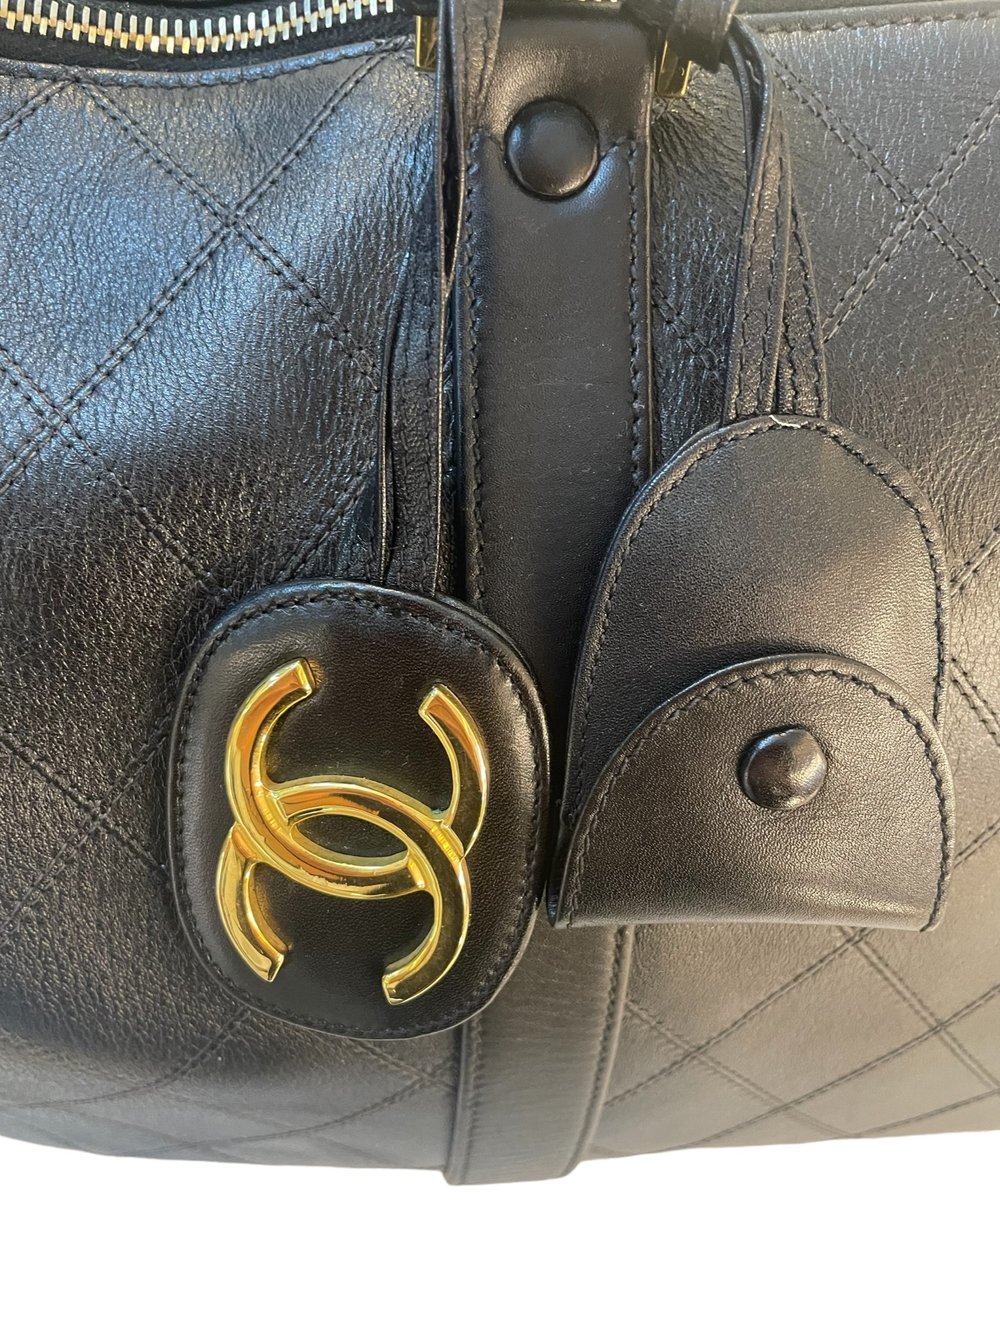 Chanel Duffle Bag - 25 For Sale on 1stDibs  chanel travel duffle bag,  chanel quilted duffle bag, chanel duffle bag black